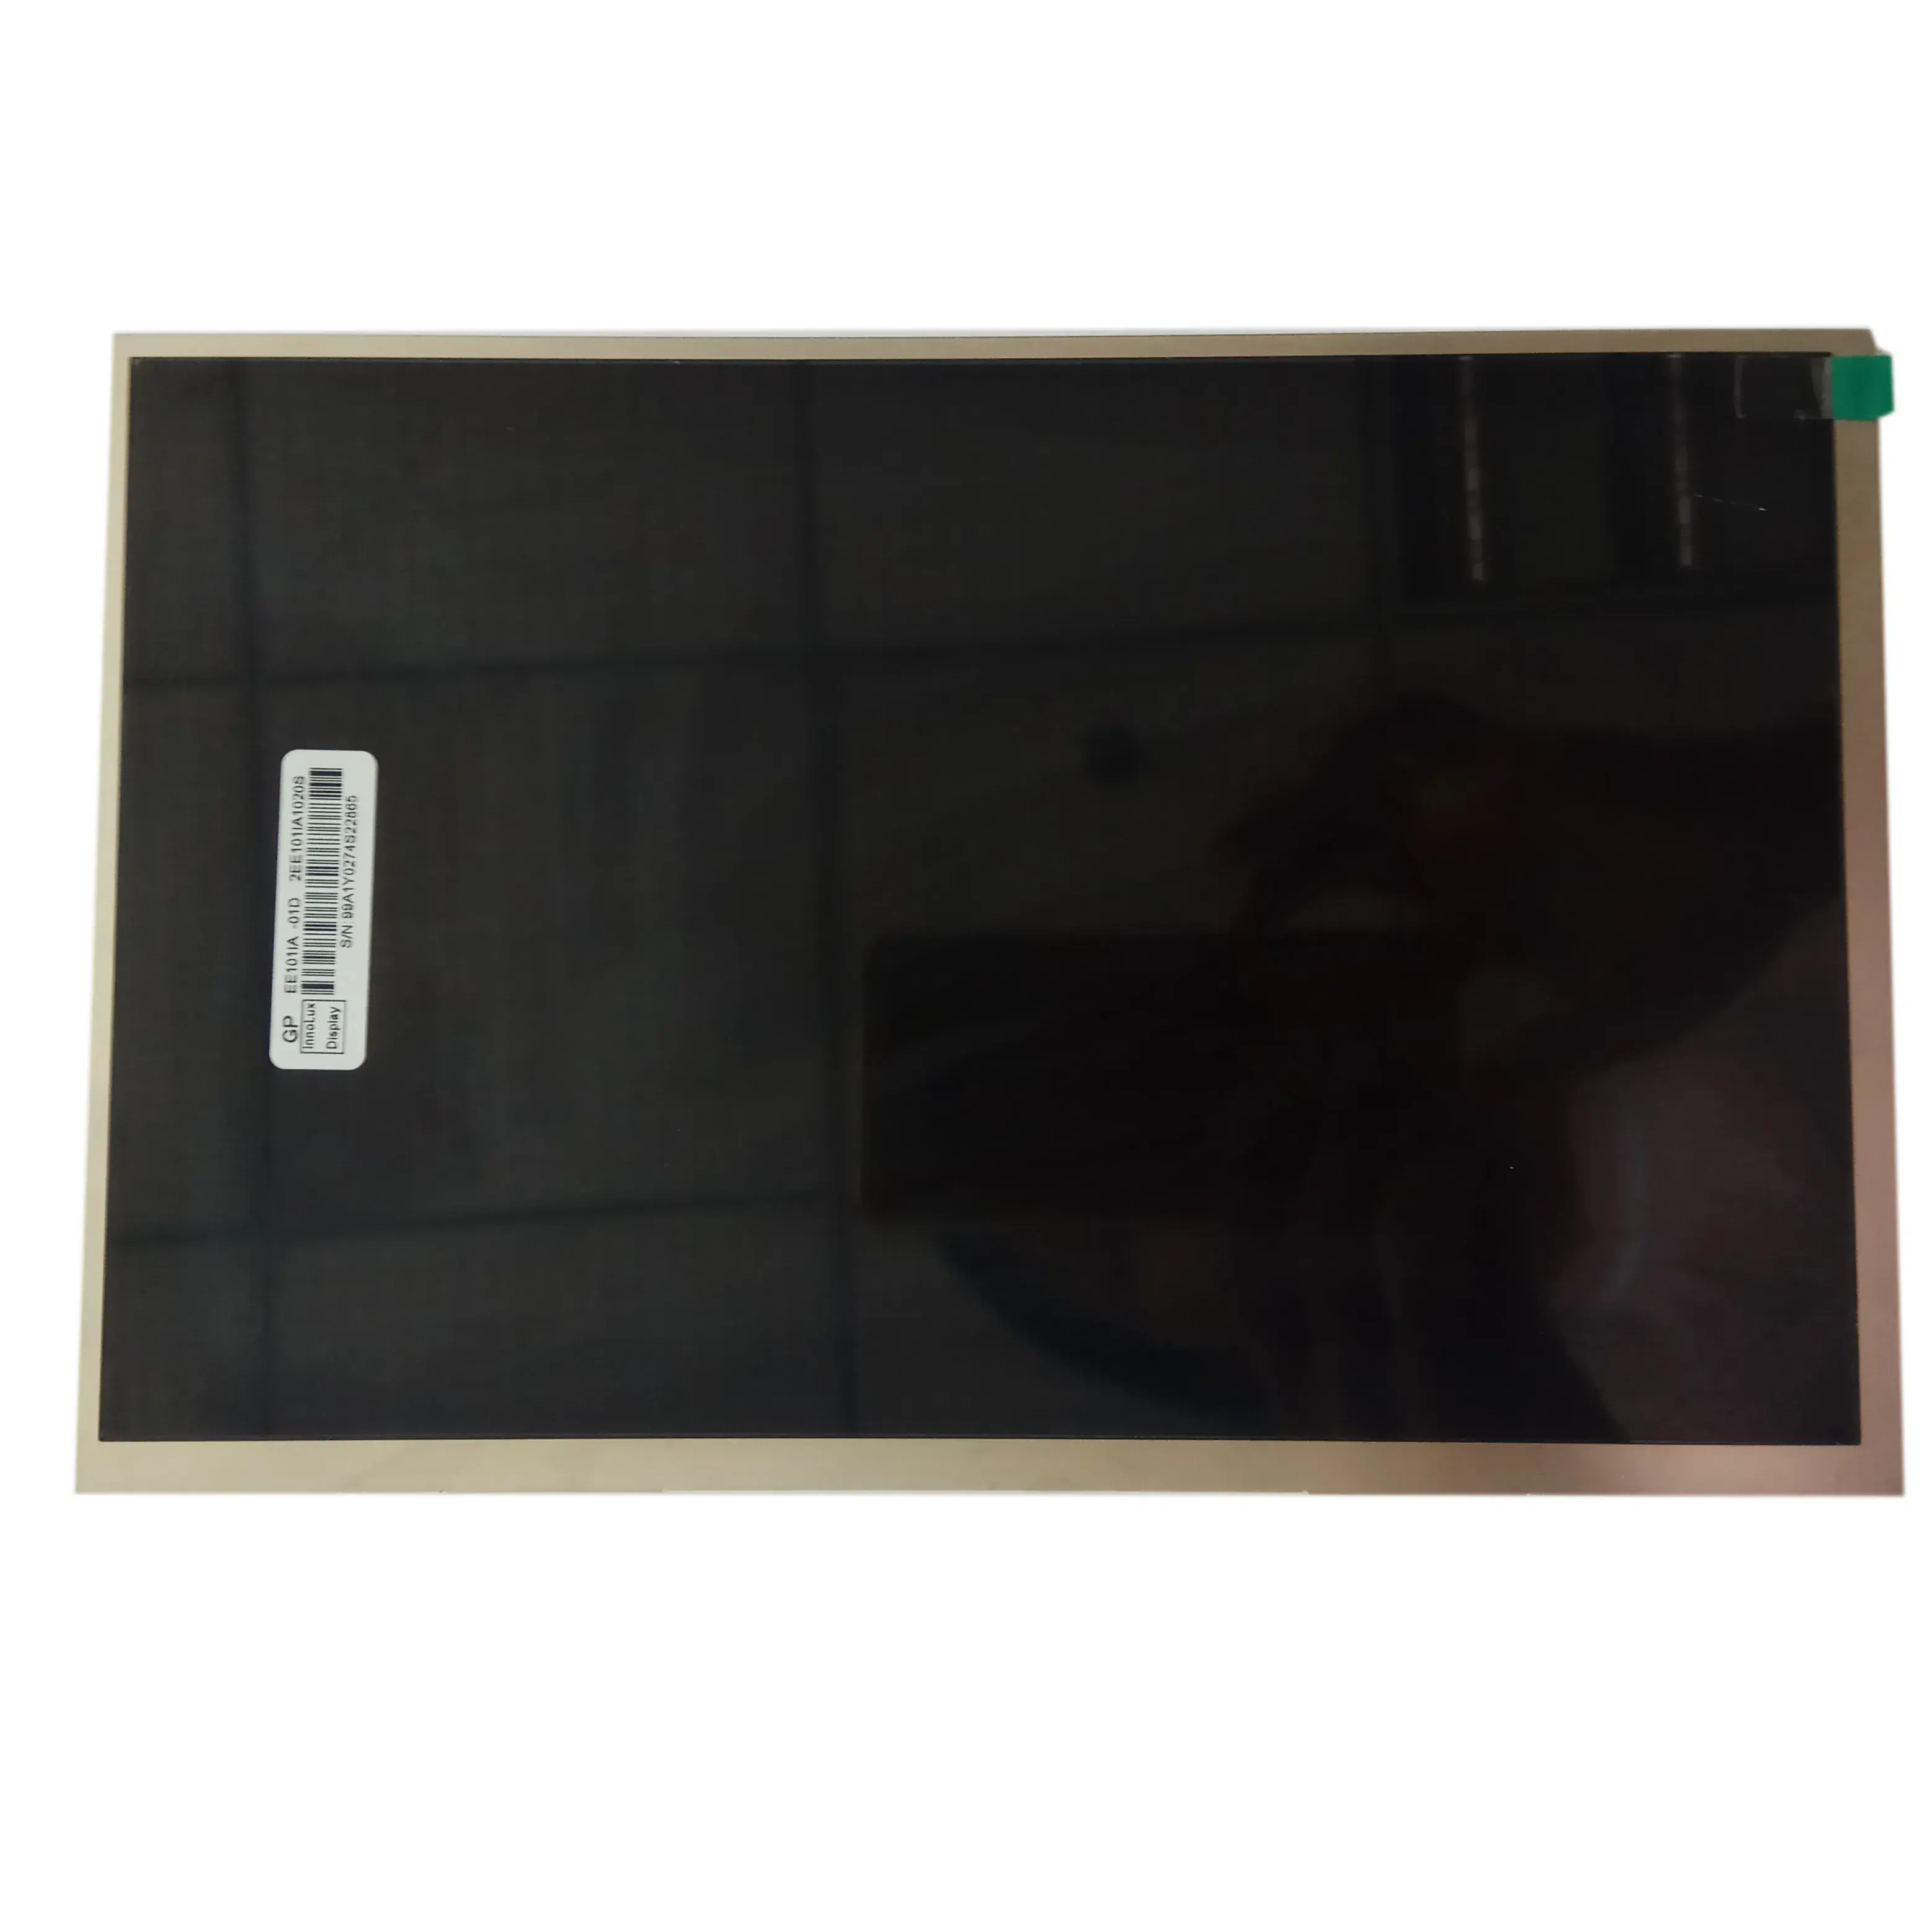 कस्टम10.1 इंच 1280x800 आईपीएस एलवीडीएस इंटरफ़ेस टीएफटी एलसीडी डिस्प्ले मॉड्यूल टच स्क्रीन के साथ